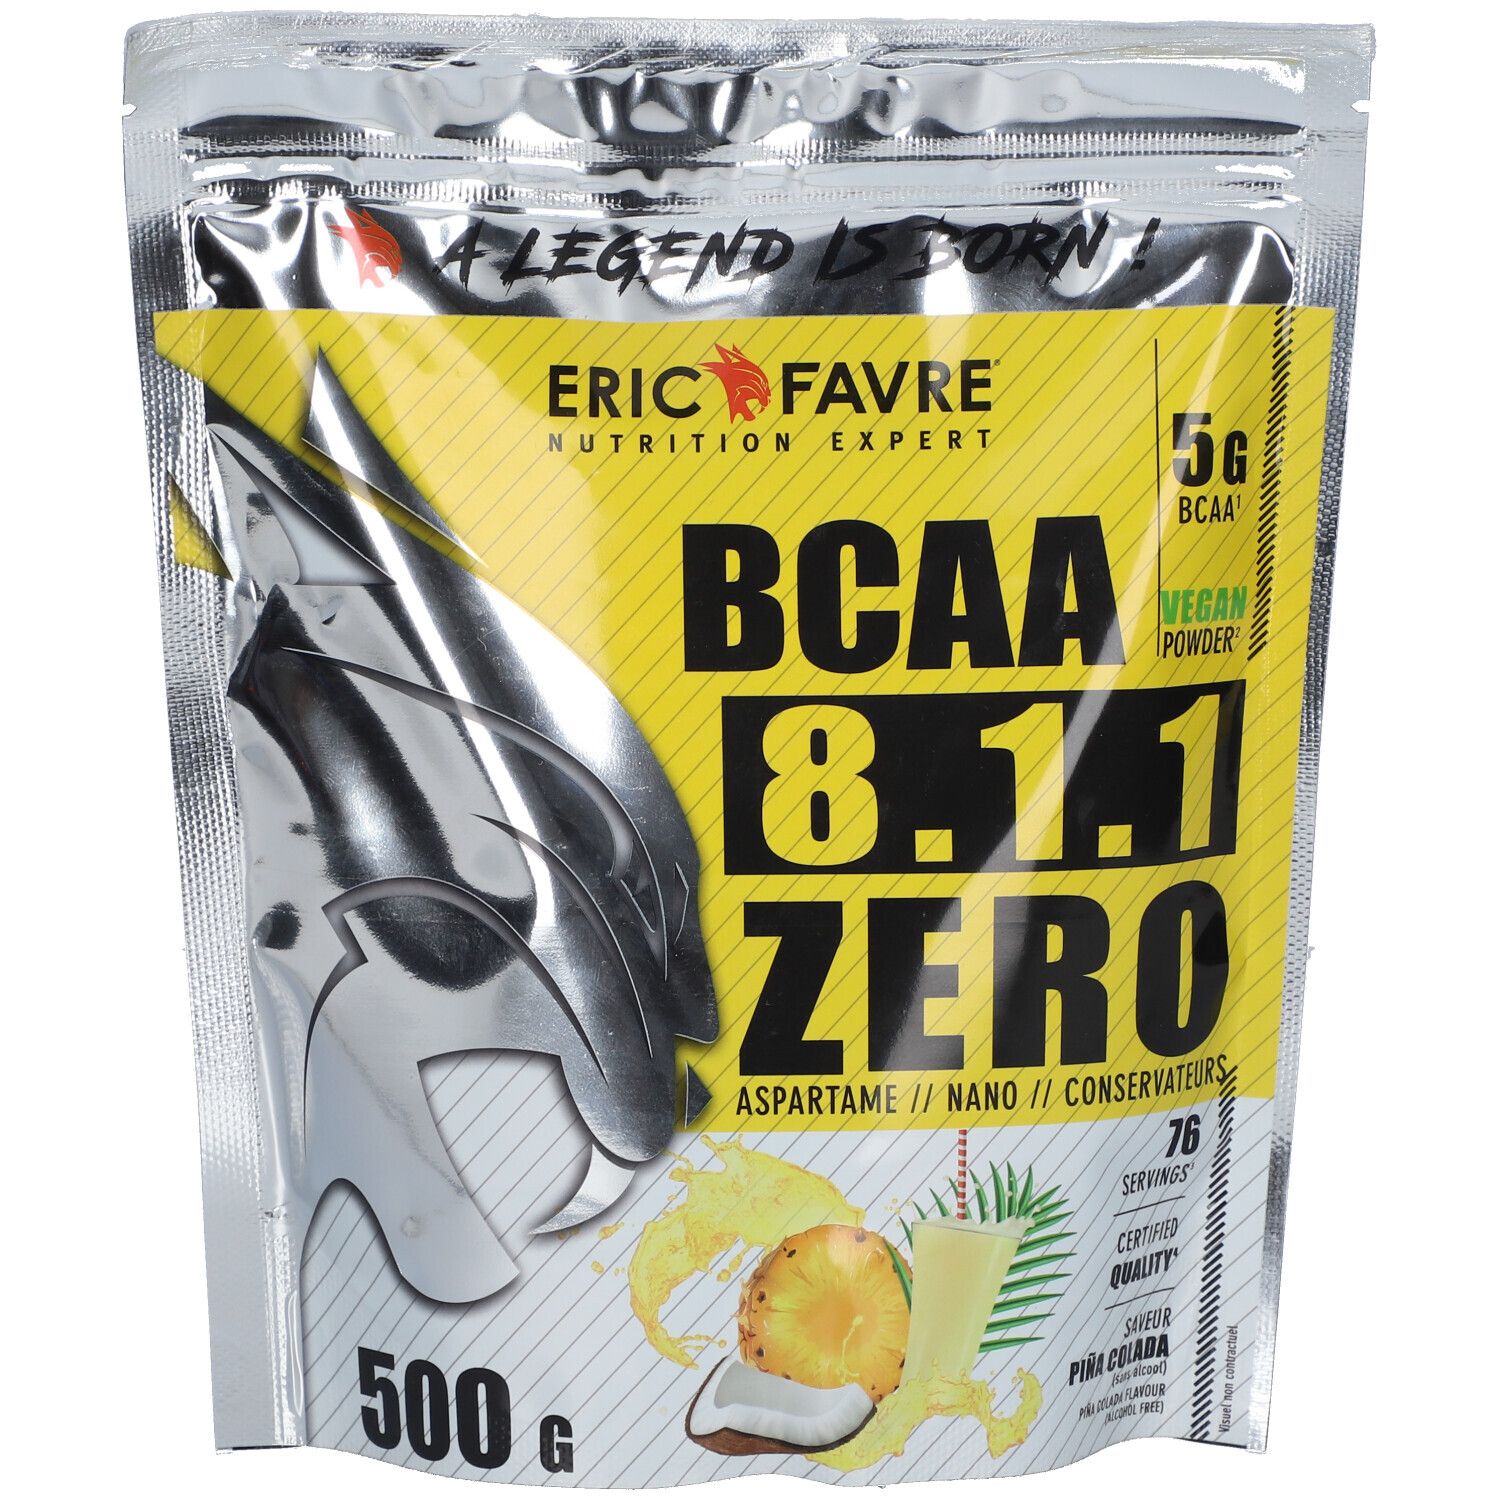 Eric Favre Bcaa 8.1.1 Zero Vegan Saveur pina colada